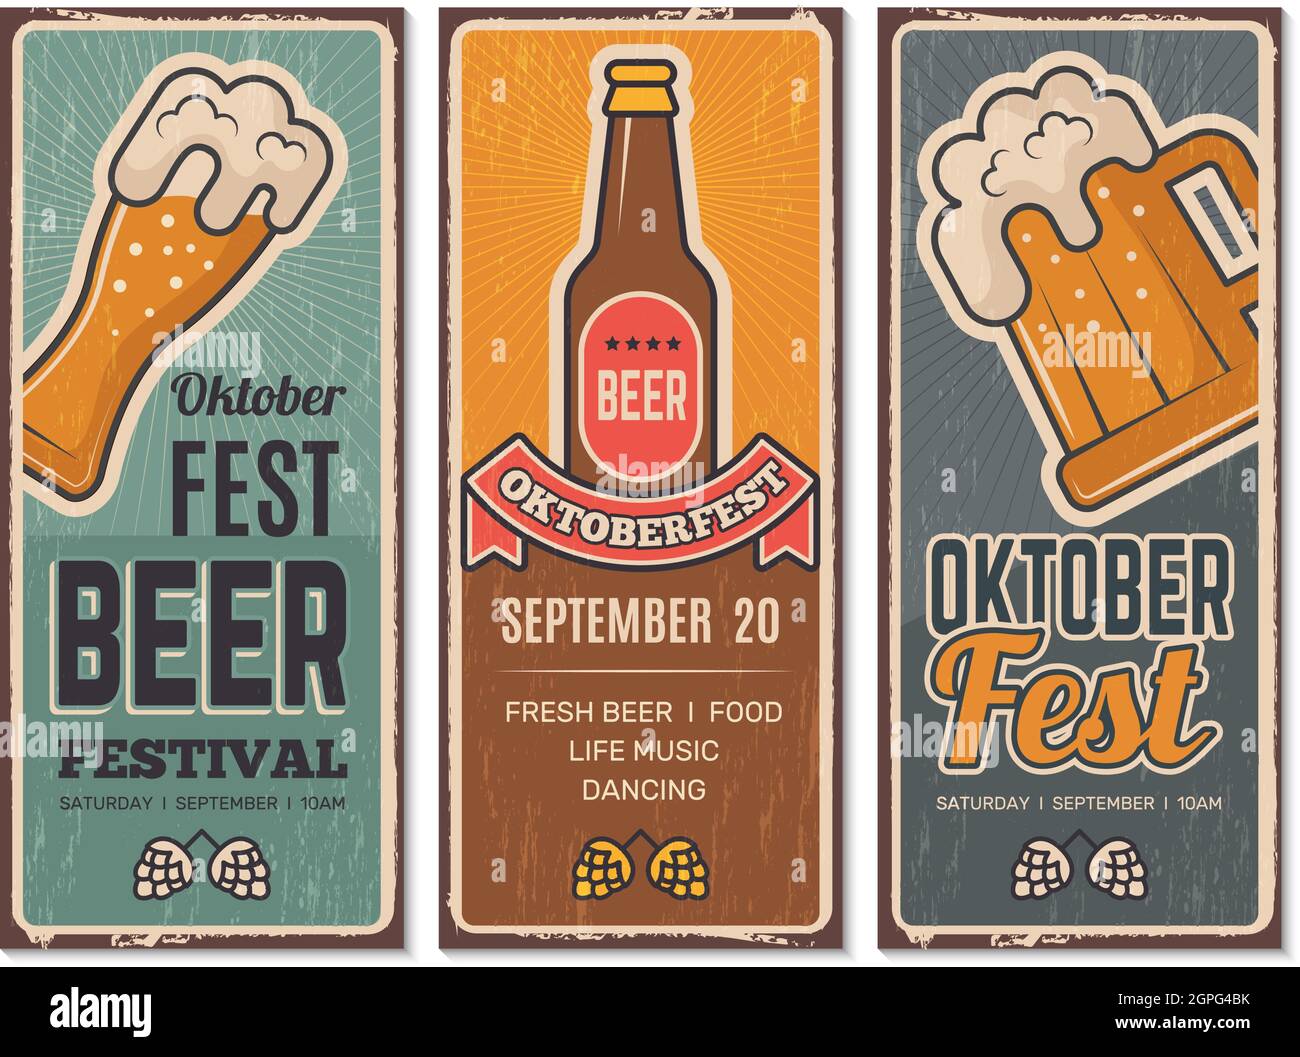 Invitación al festival de la cerveza. Oktoberfest banners vintage con fotos de cerveza artesanal lager alemania bavaria pub menú de bebidas fotos vector retro plantilla Ilustración del Vector